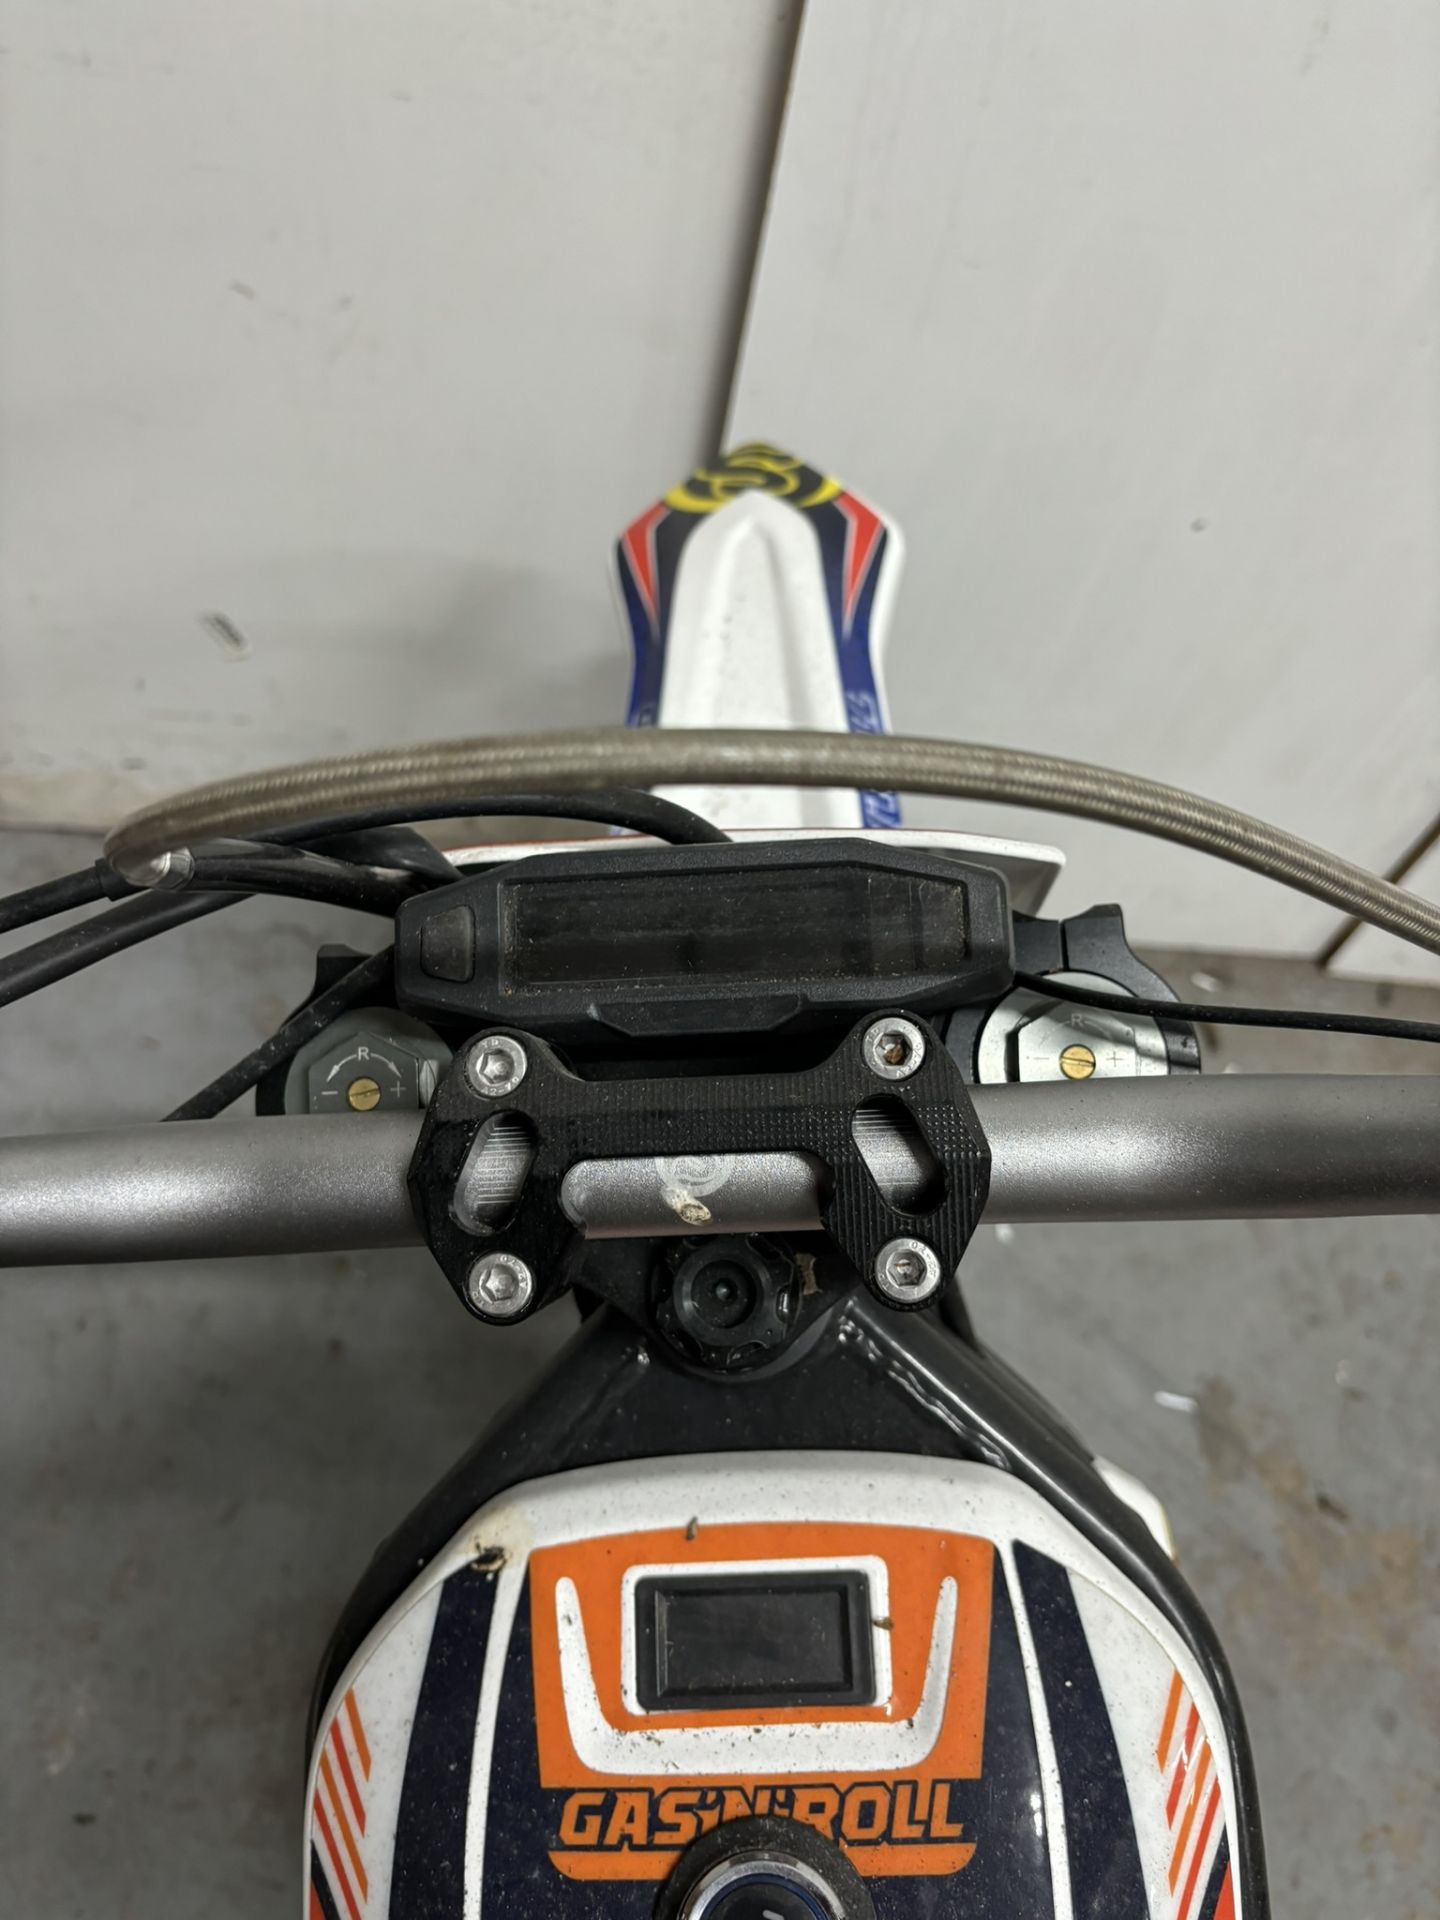 Velimotor VMX12 Electric Motorcycle / Dirt Bike - Image 22 of 24